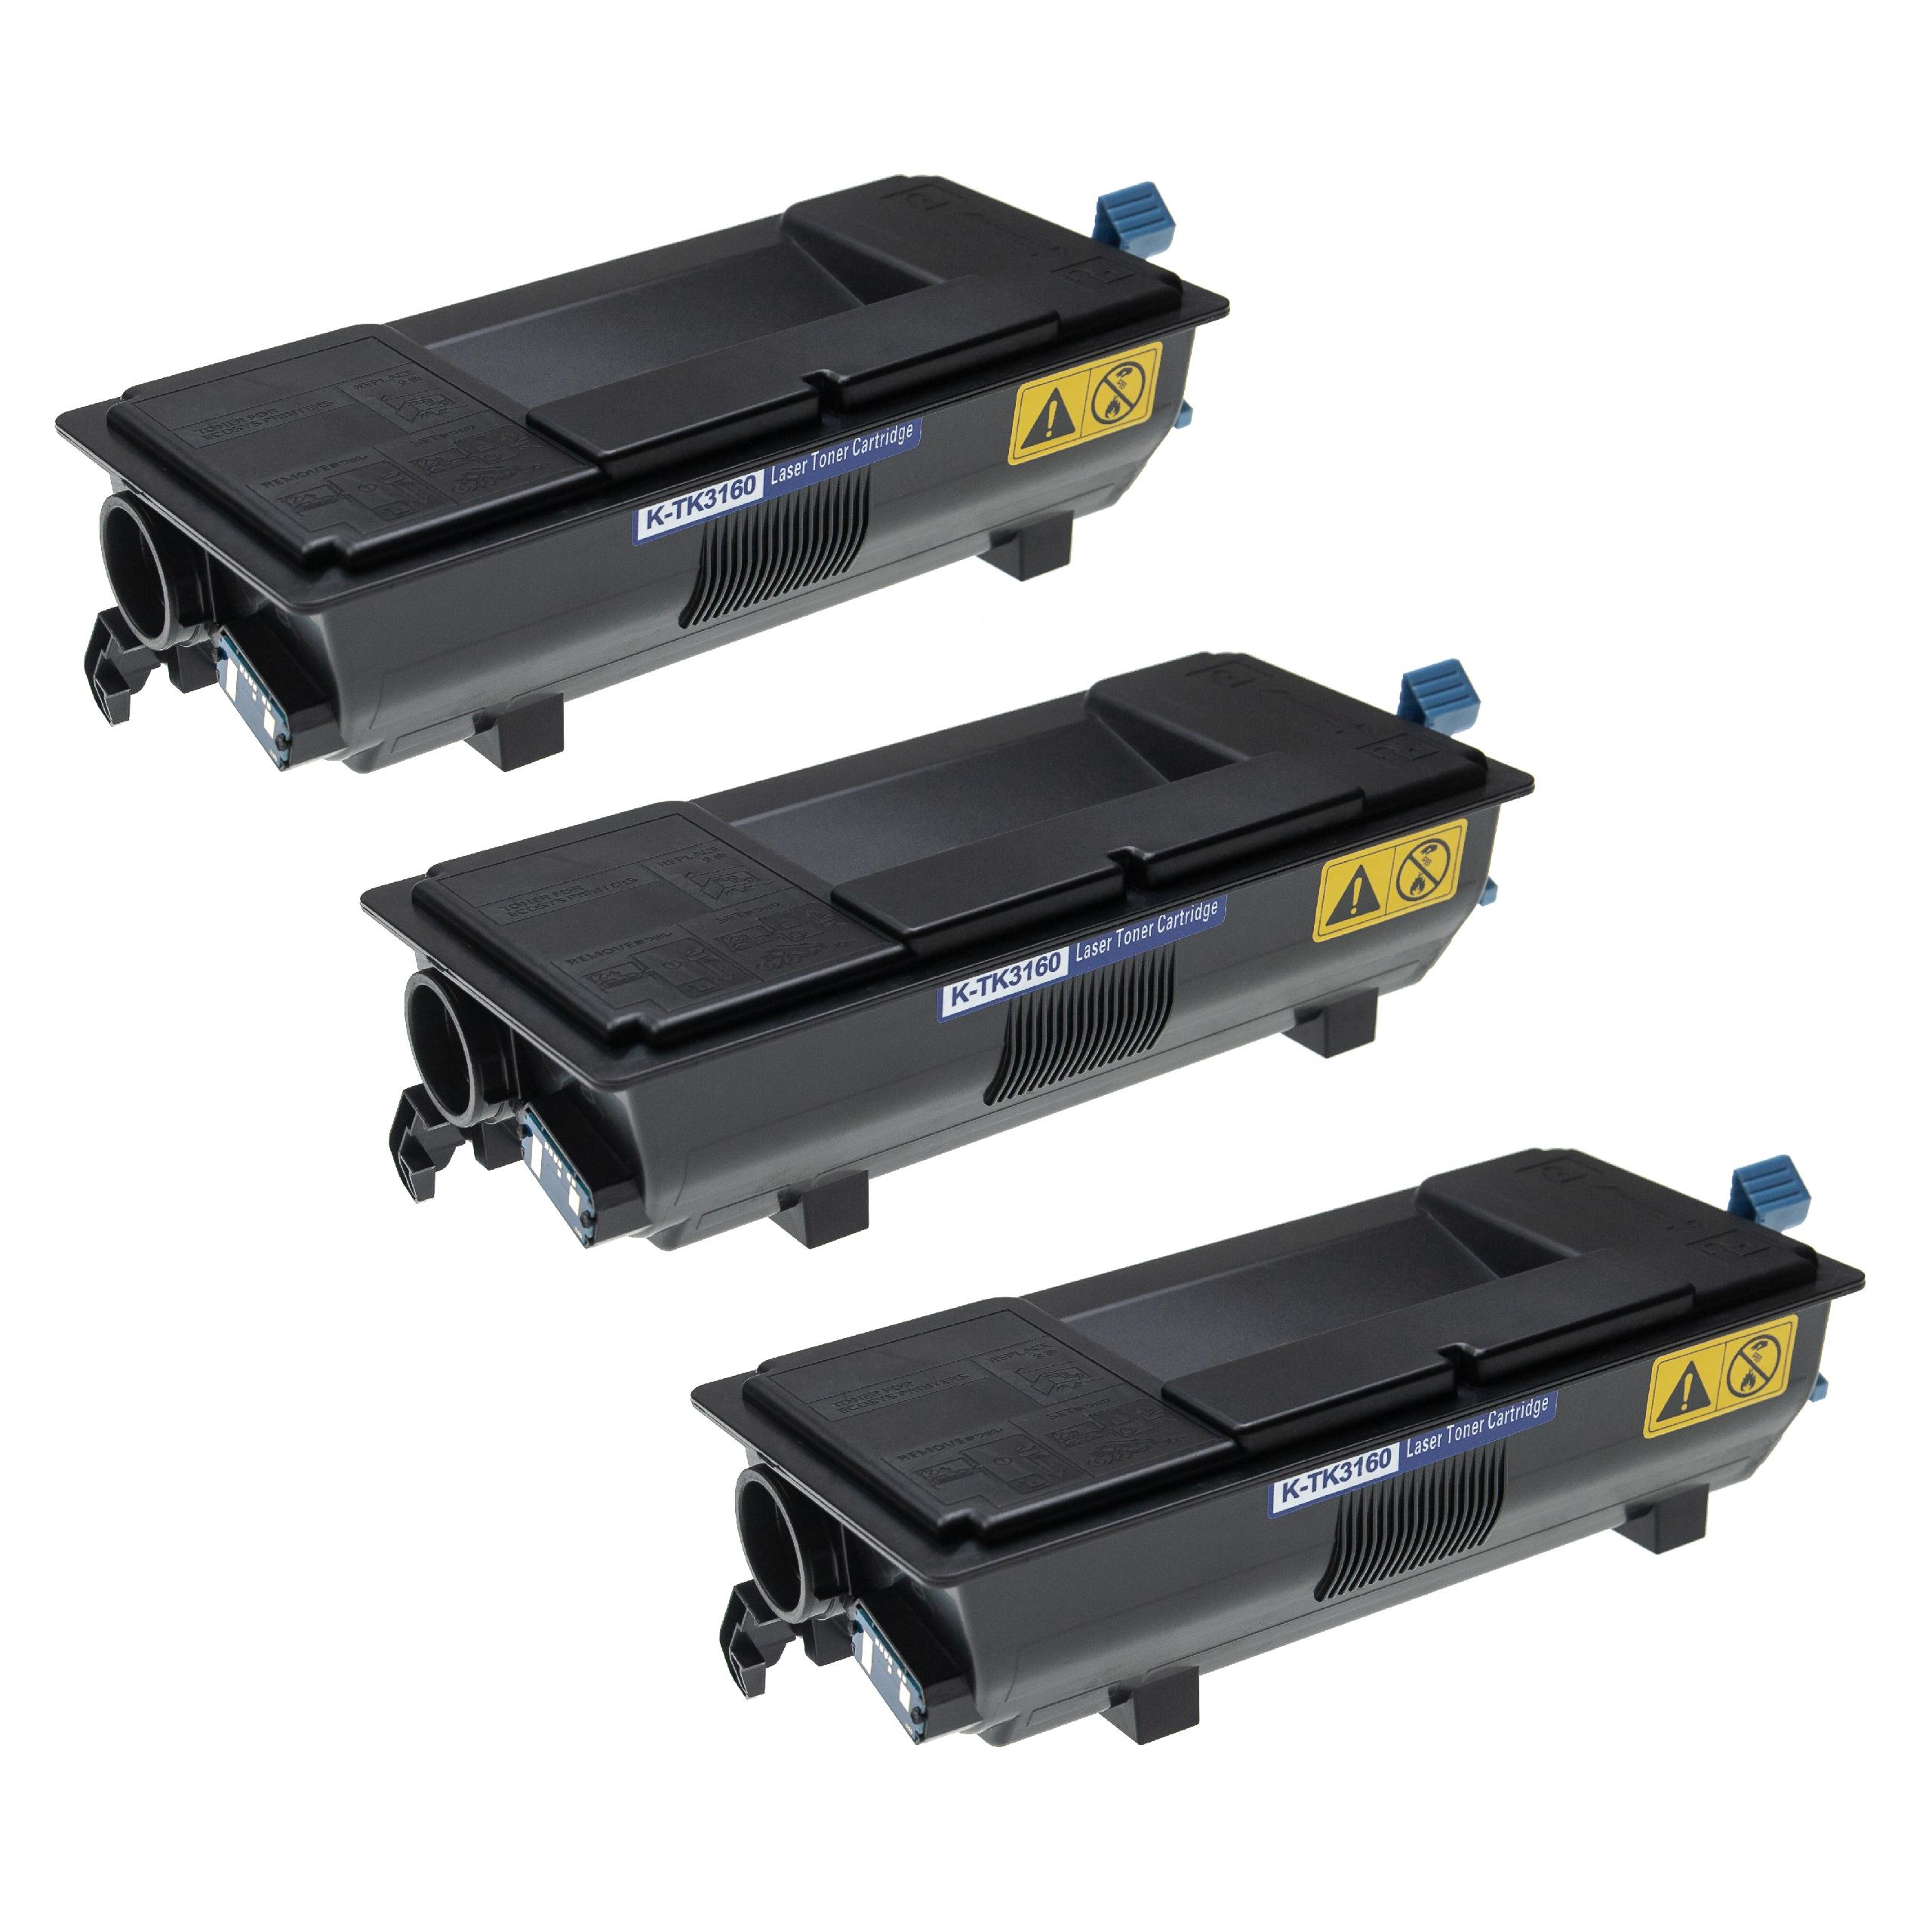 3x Tóner reemplaza Kyocera TK-3160 compatible con impresoras Kyocera + caja residuos de tóner, negro